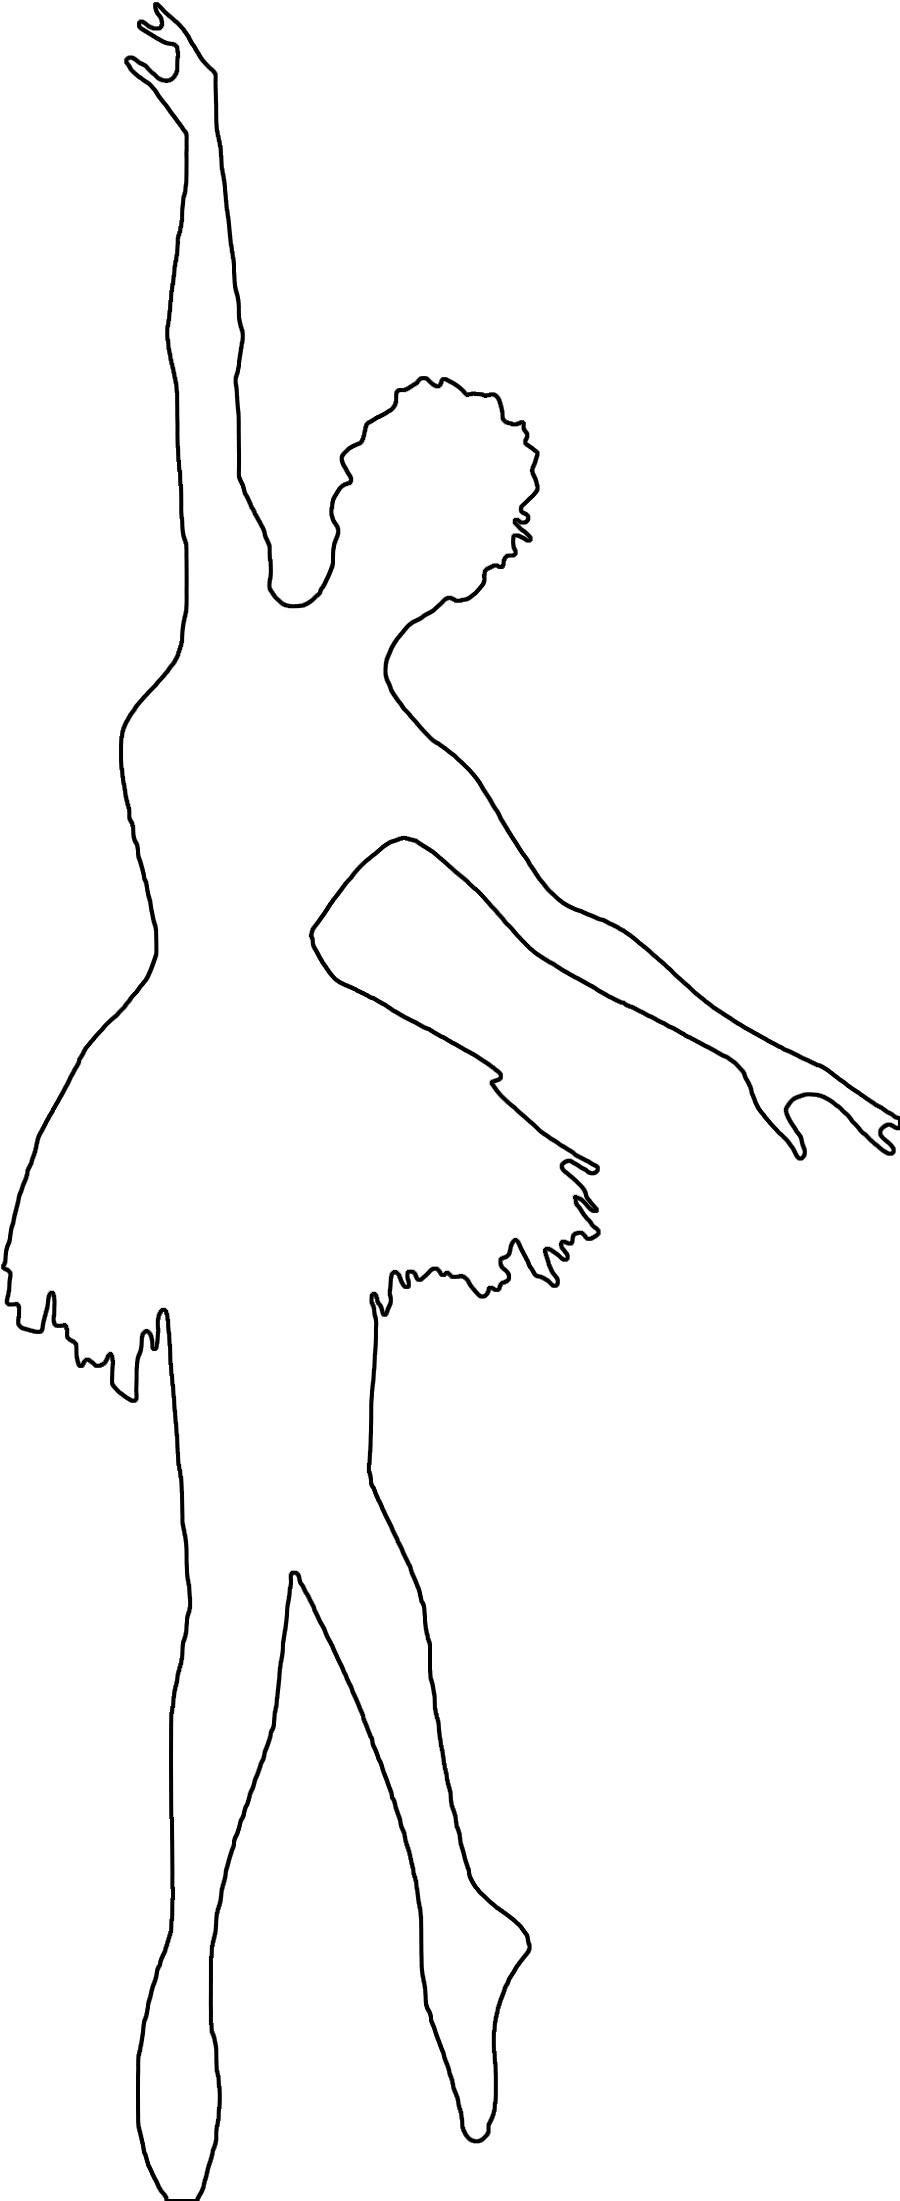 Раскраски шаблоны балерин балерина контур для вырезки из бумаги, для детского творчества